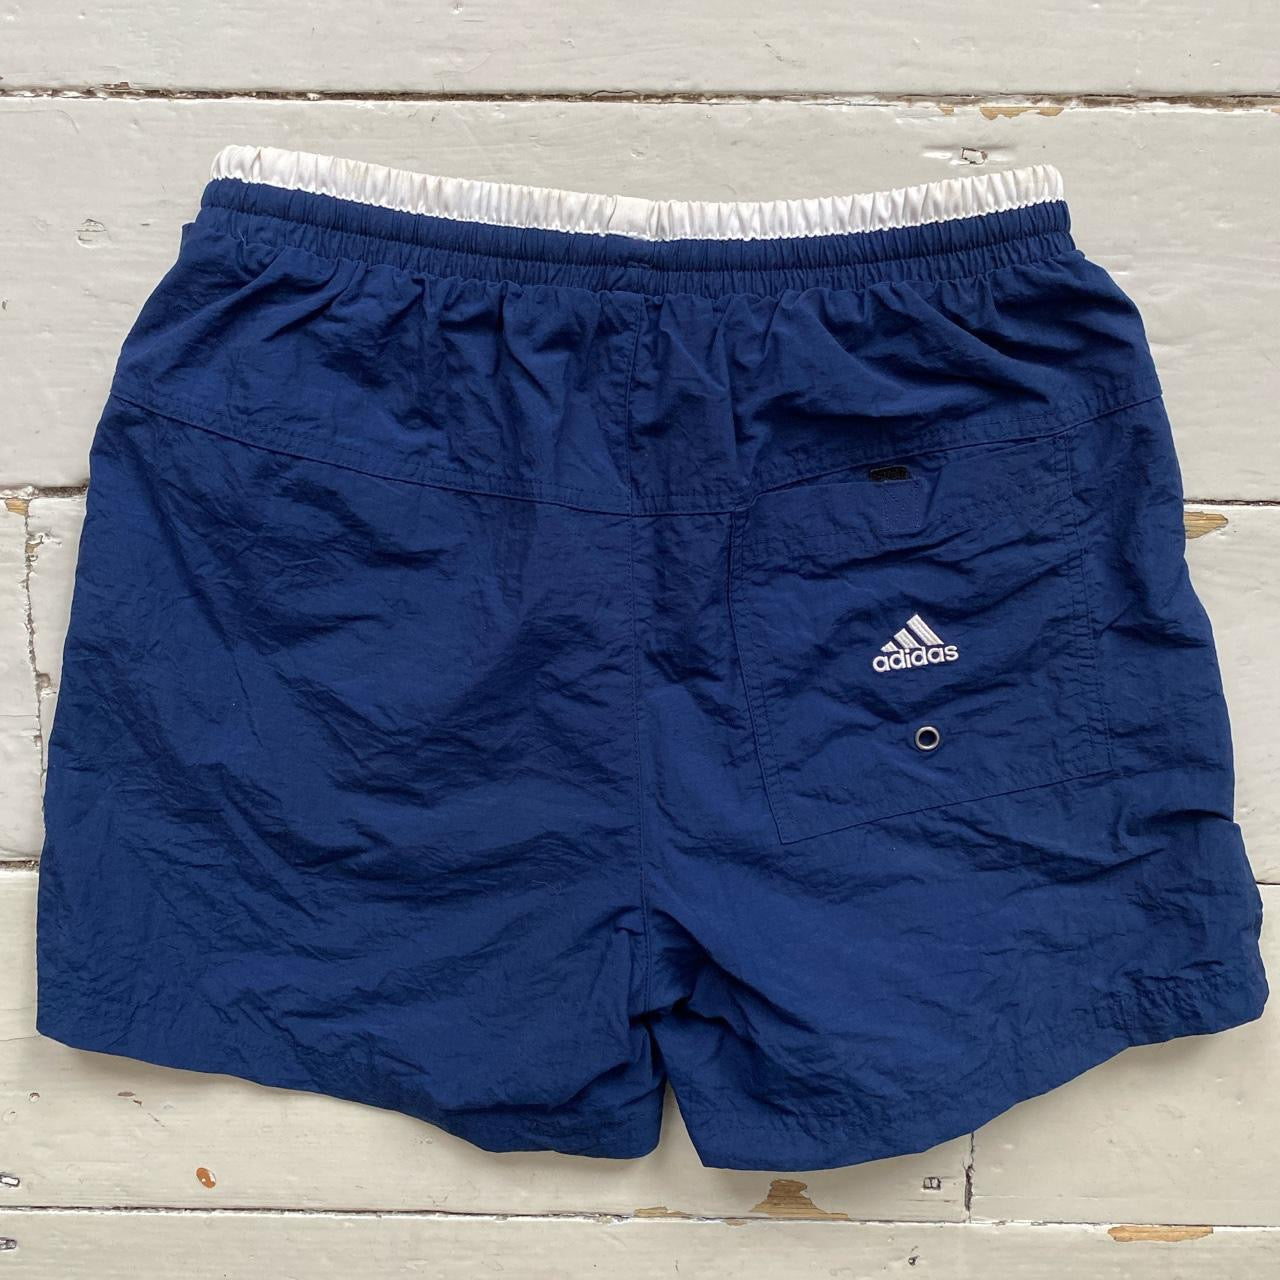 Adidas Vintage Navy Shorts (Small)